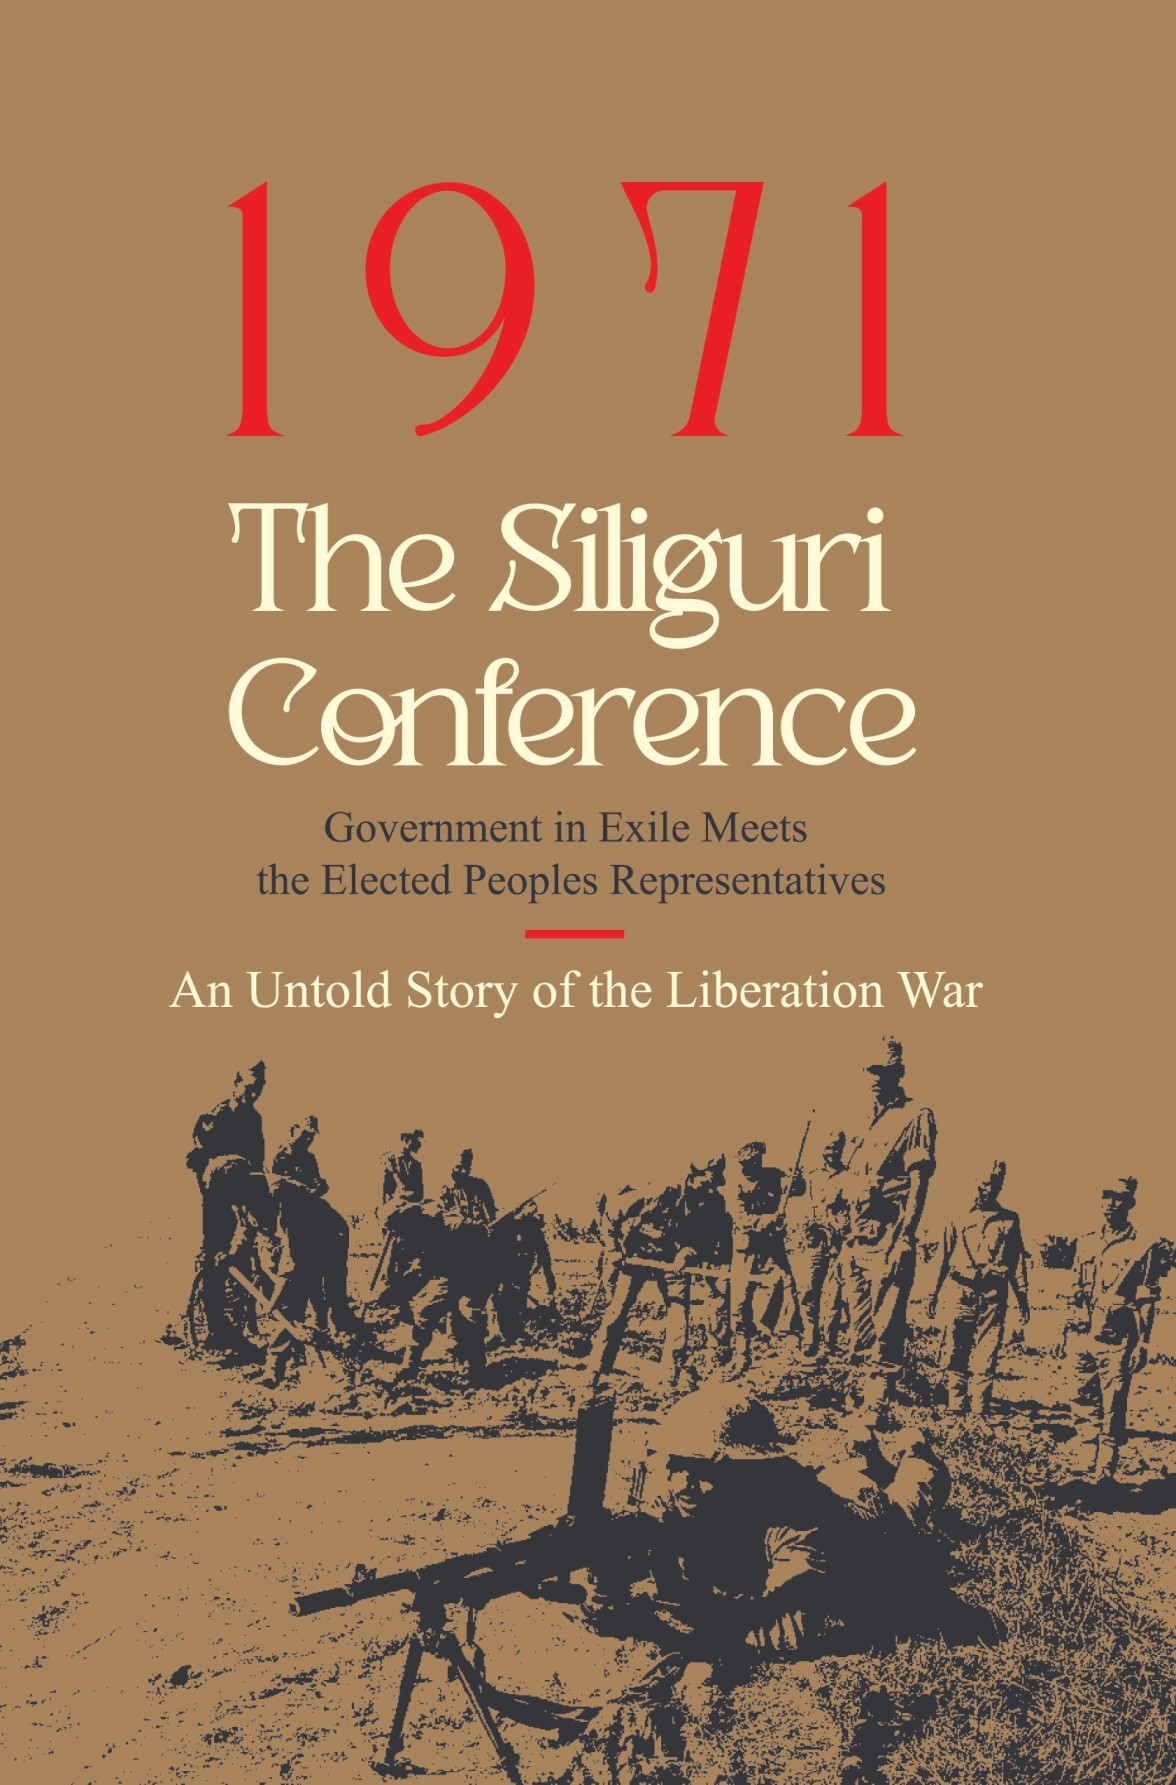 1971: The Siliguri Conference